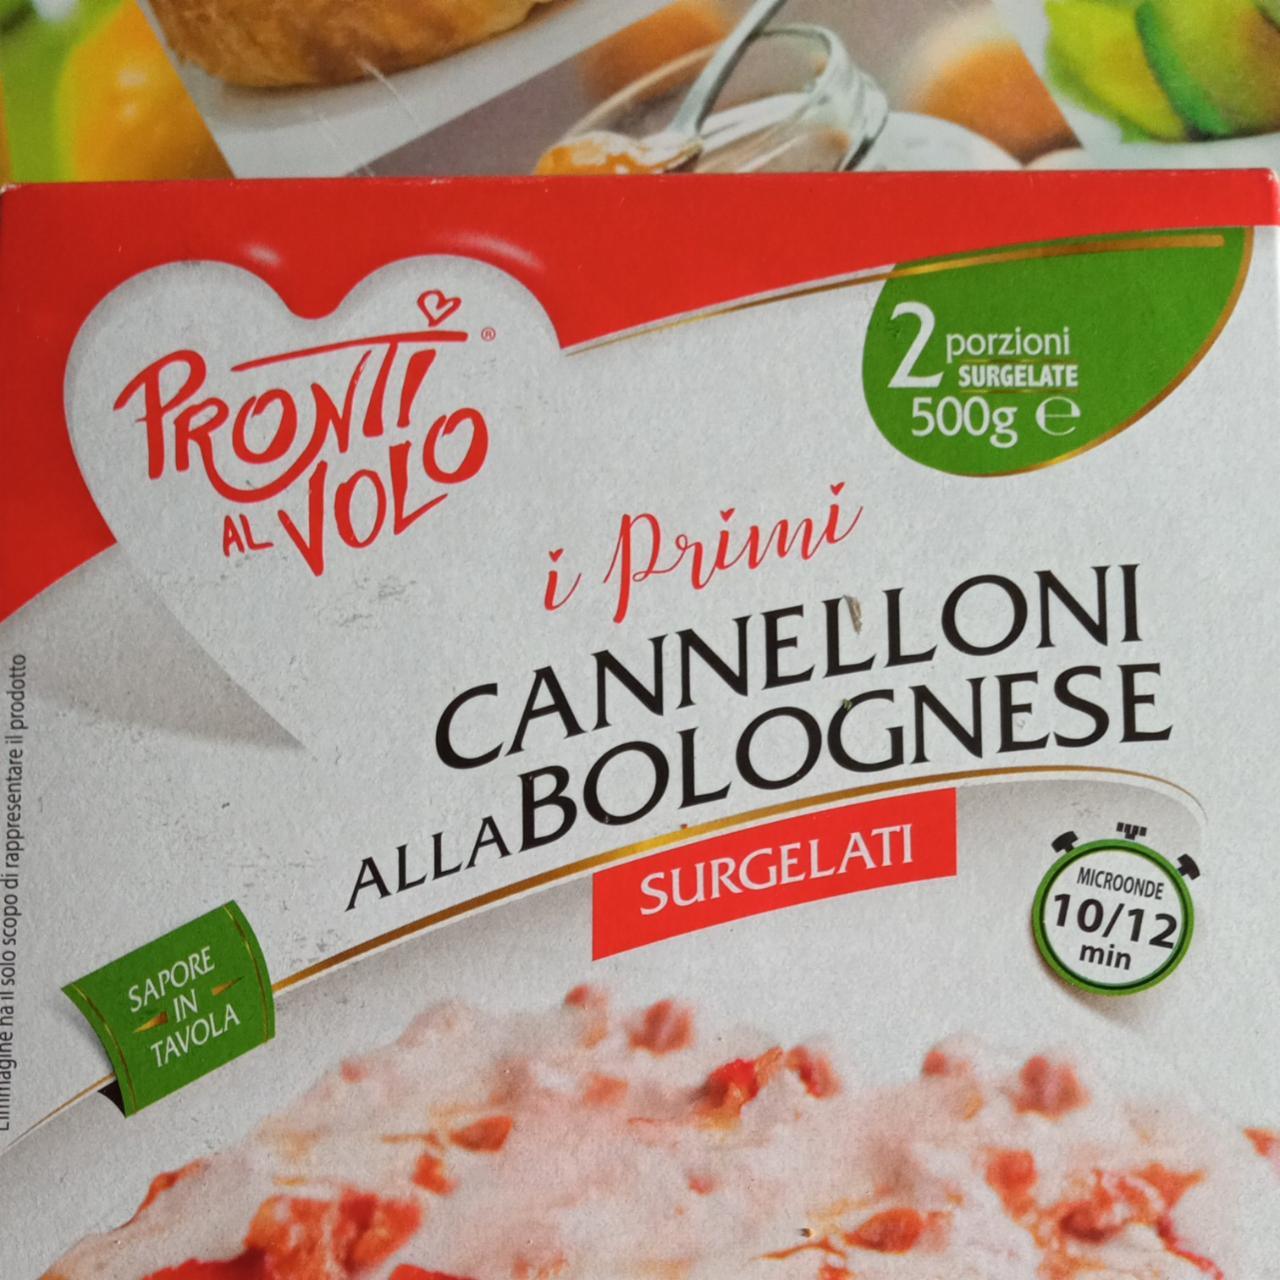 Фото - Cannelloni alla Bolognese Pronti al volvo